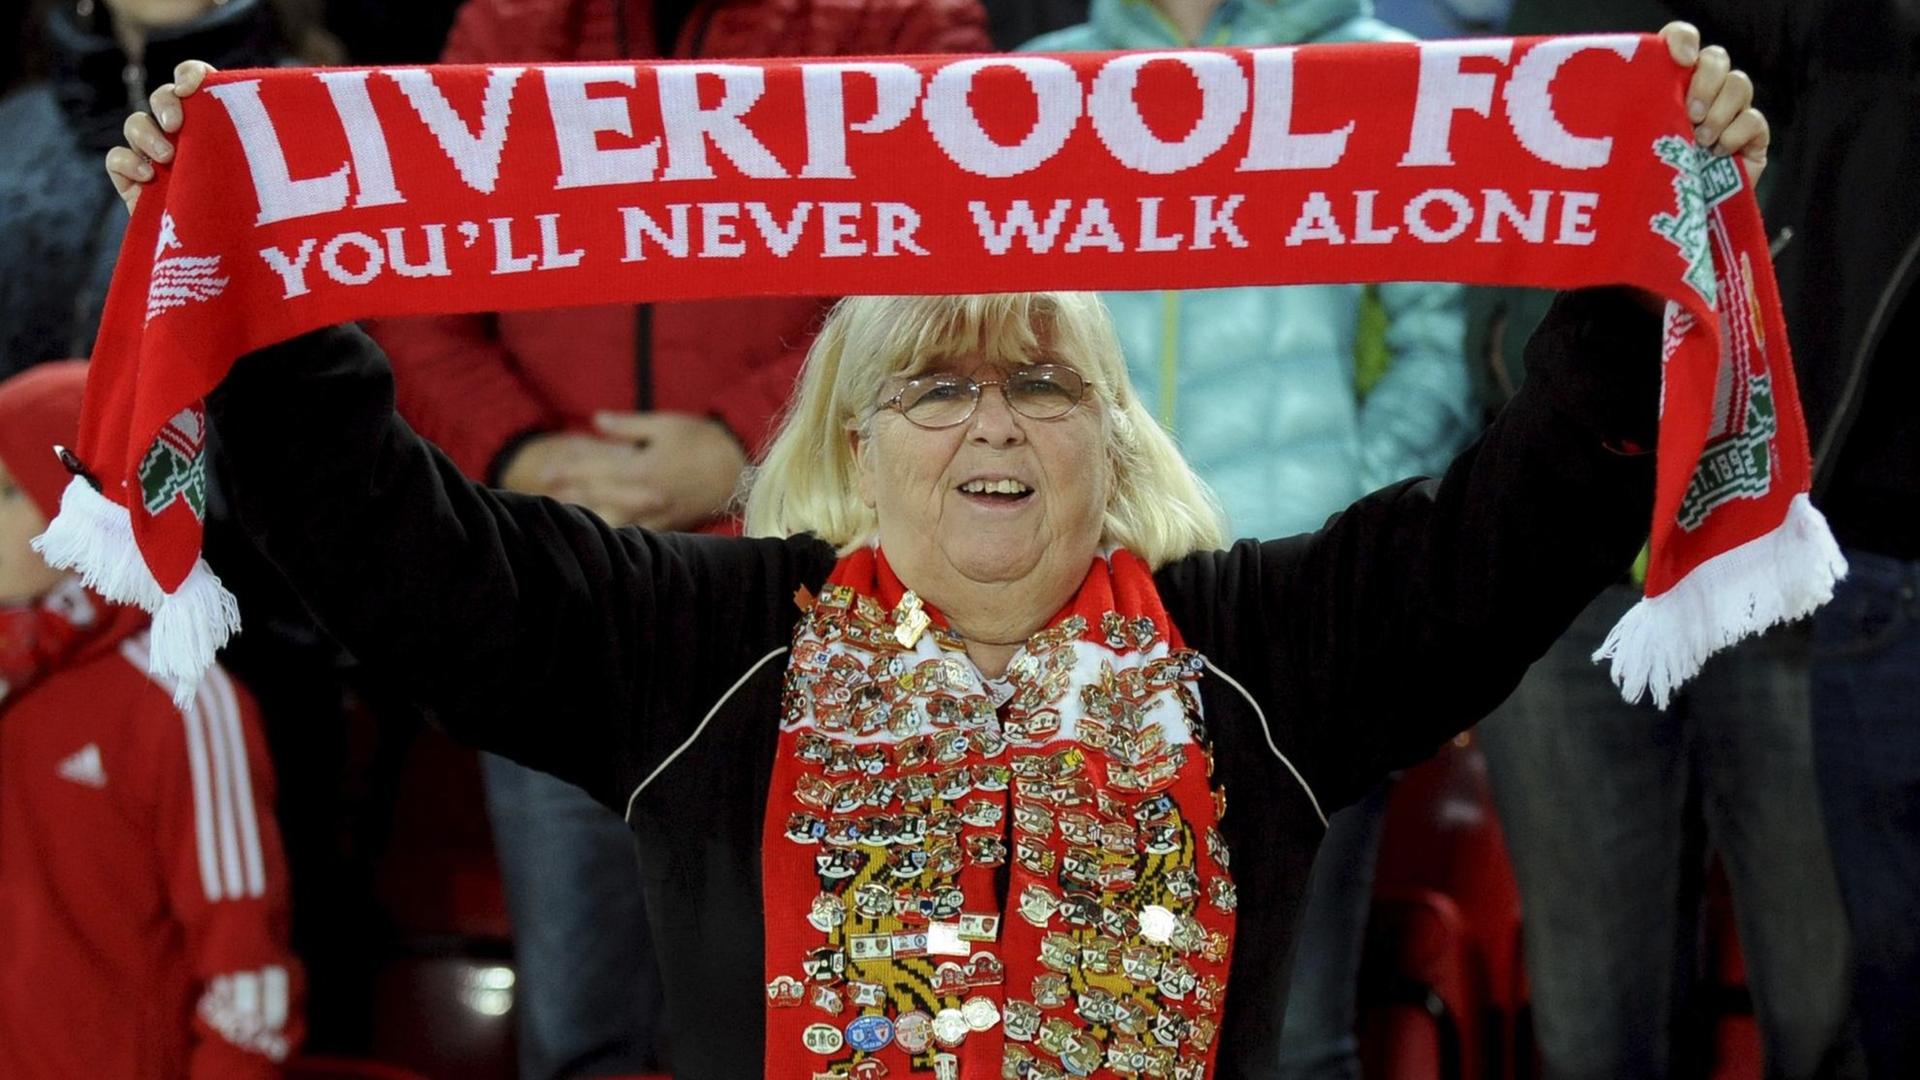 Das Foto zeigt einen weiblichen Fan des FC Liverpool, die ihren Fan-Schal hochhält. Darauf steht: You'll never walk alone.